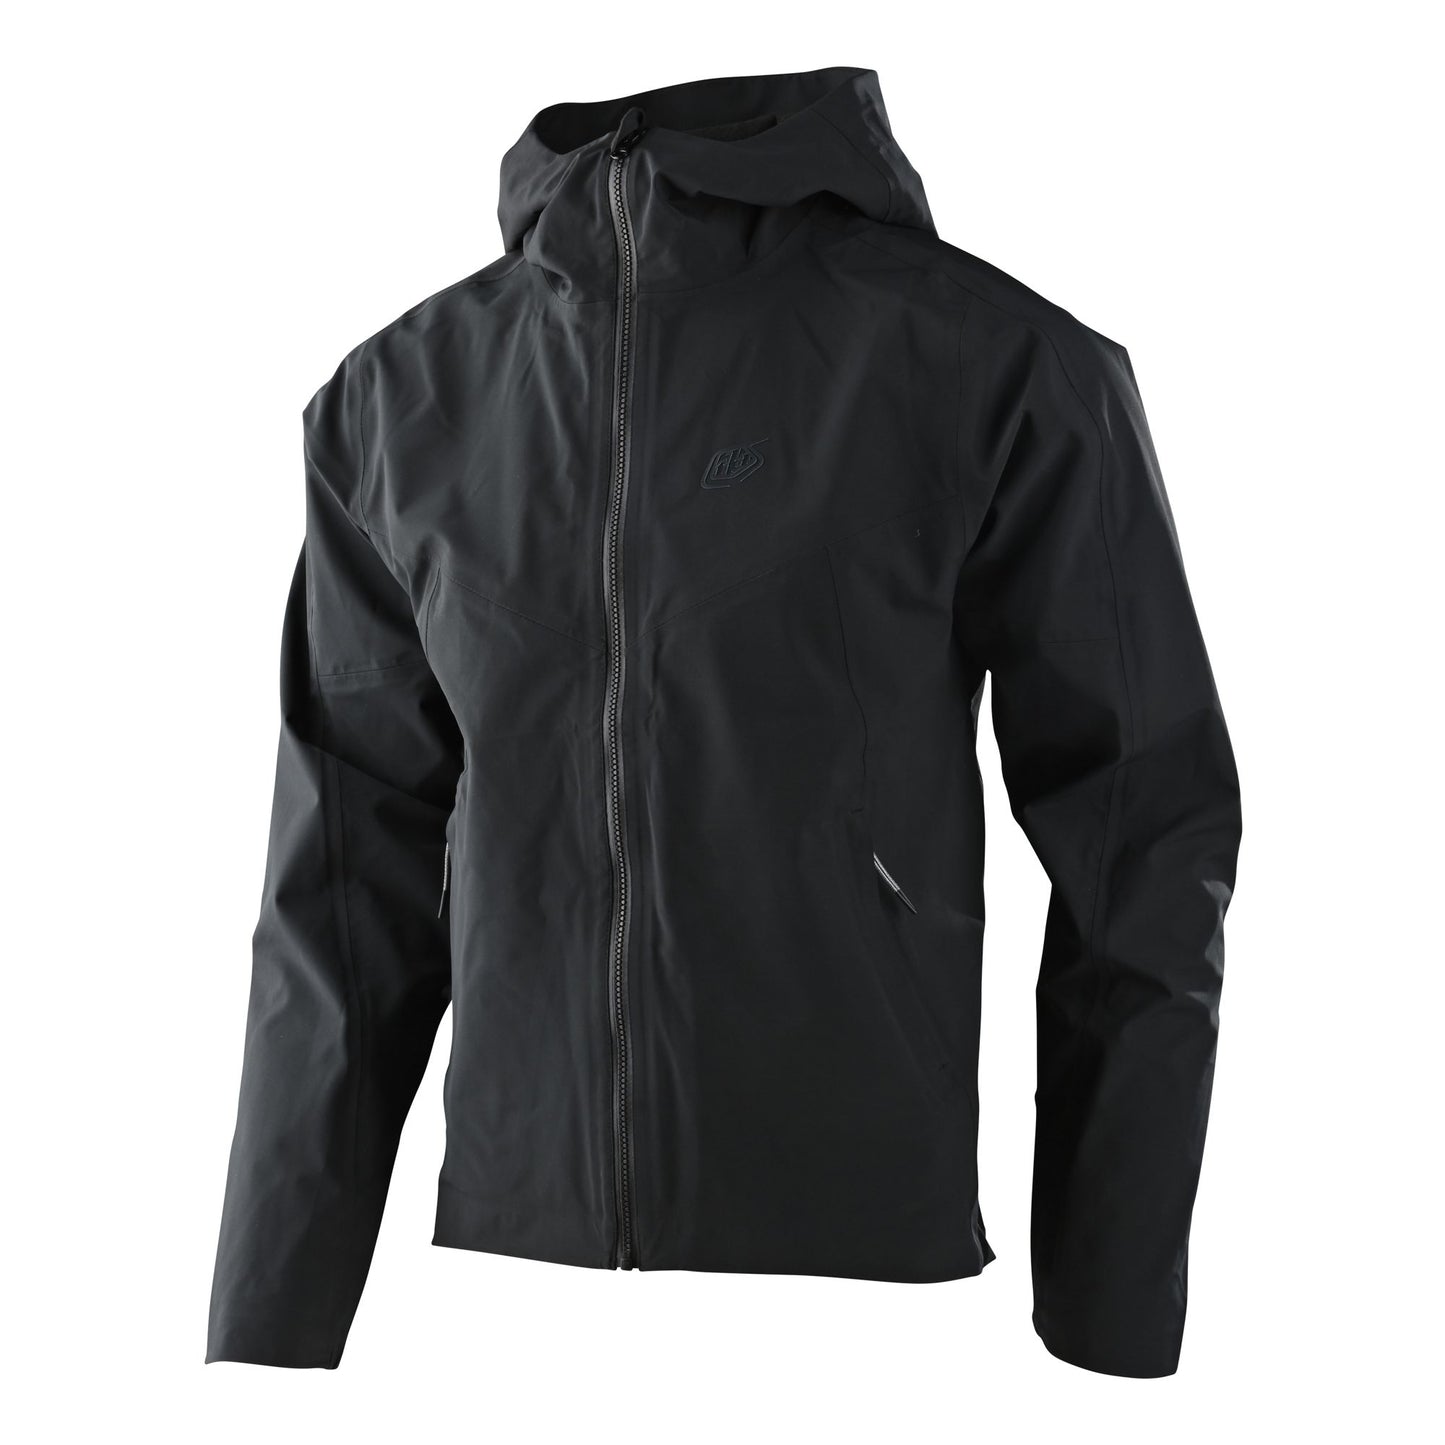 Troy Lee Designs Descent Jacket Solid Black Jackets & Vests